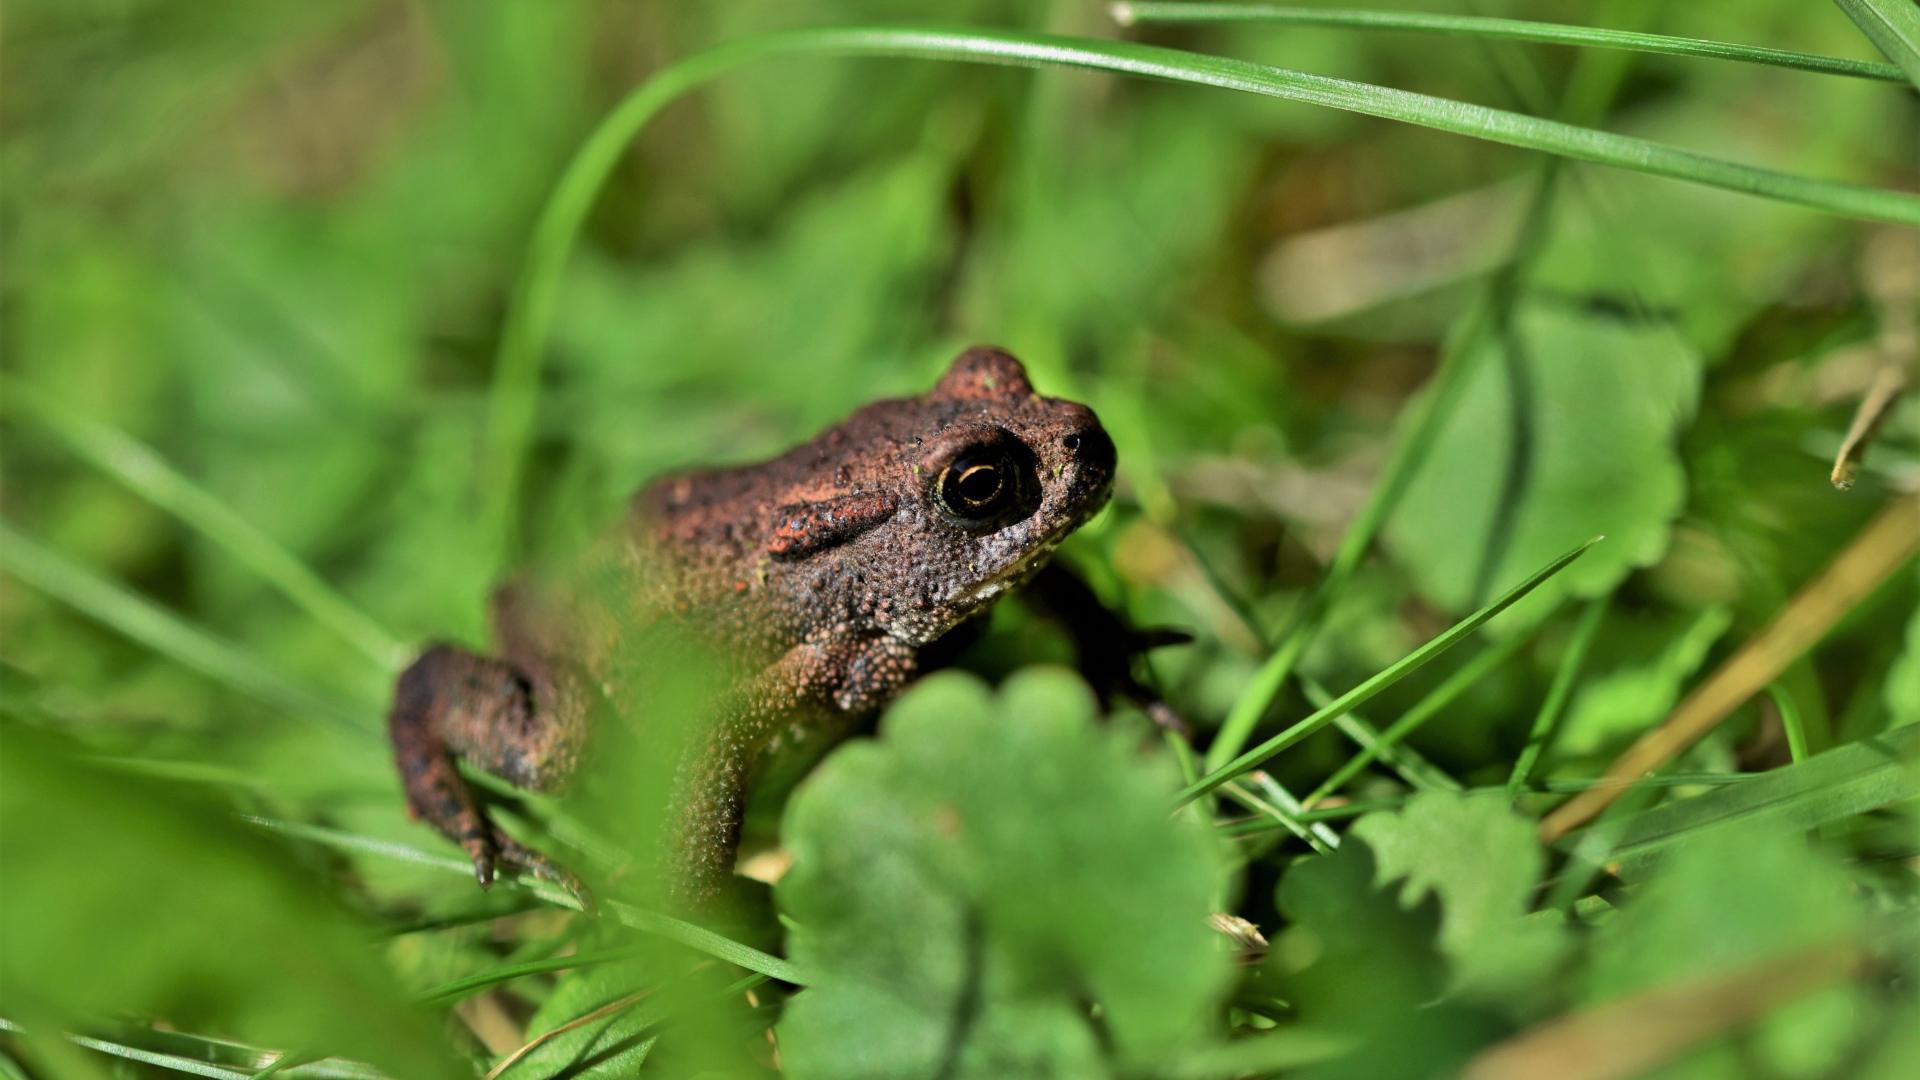 Большая лягушка сидит в зеленой траве